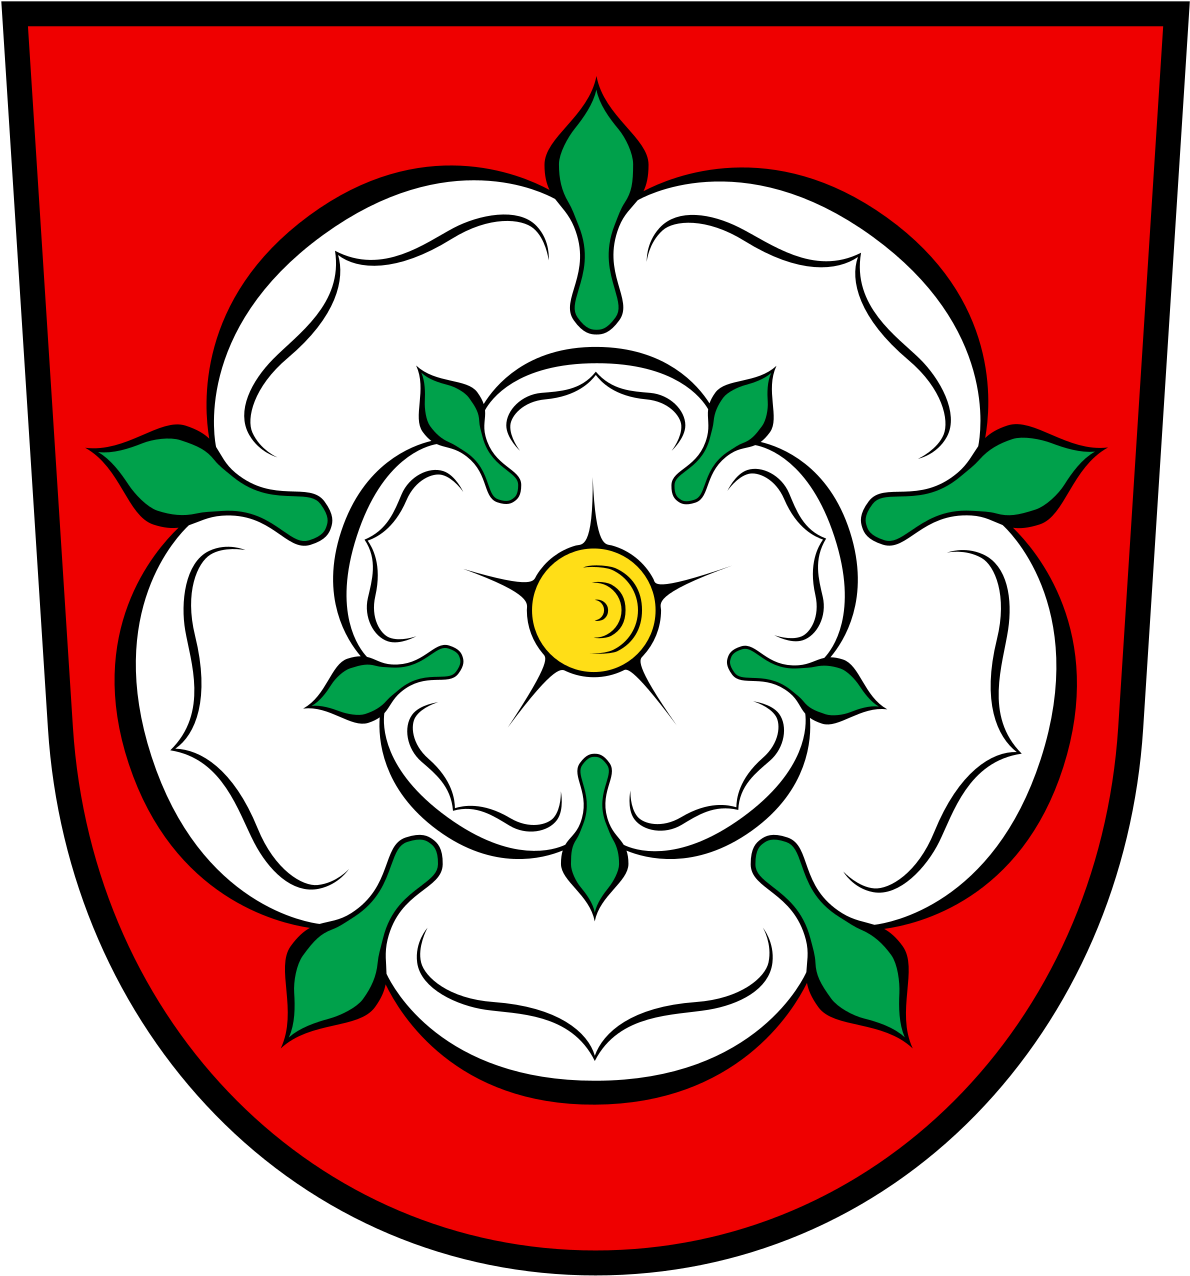 Wappen Stadt Rosenheim (1200x1286)